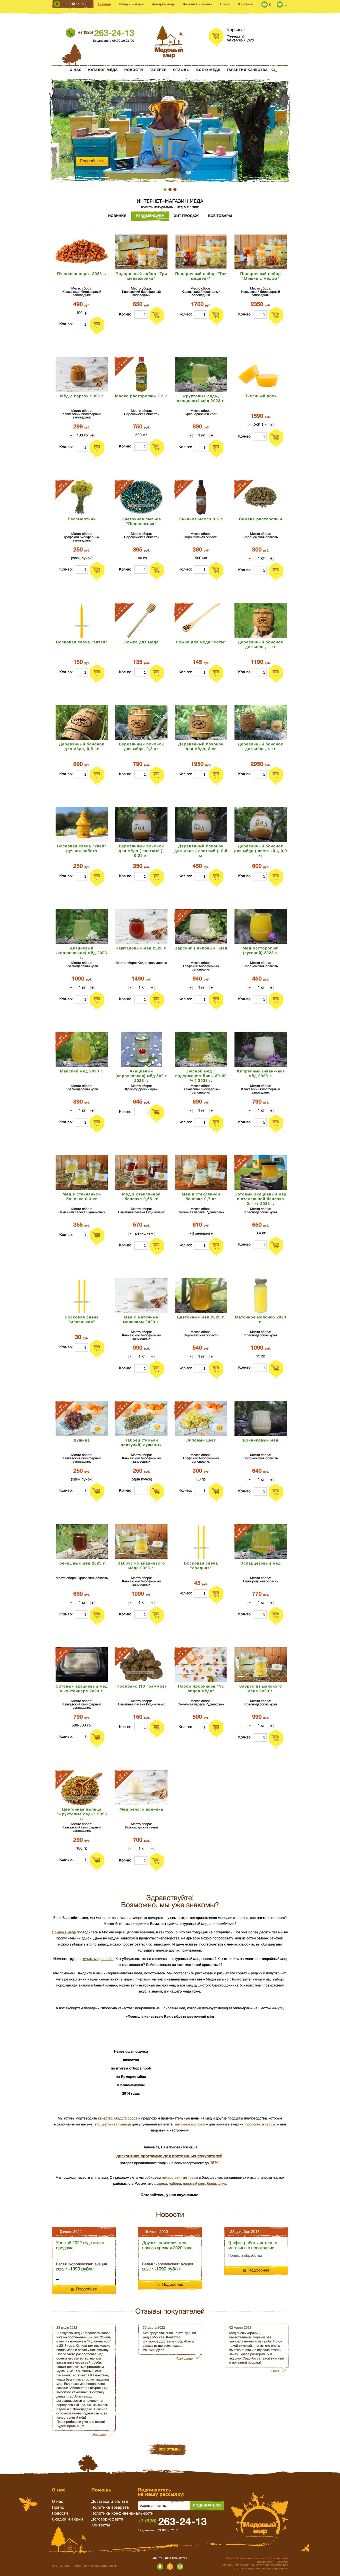 Пример посадочной страницы сайта для продажи натурального меда